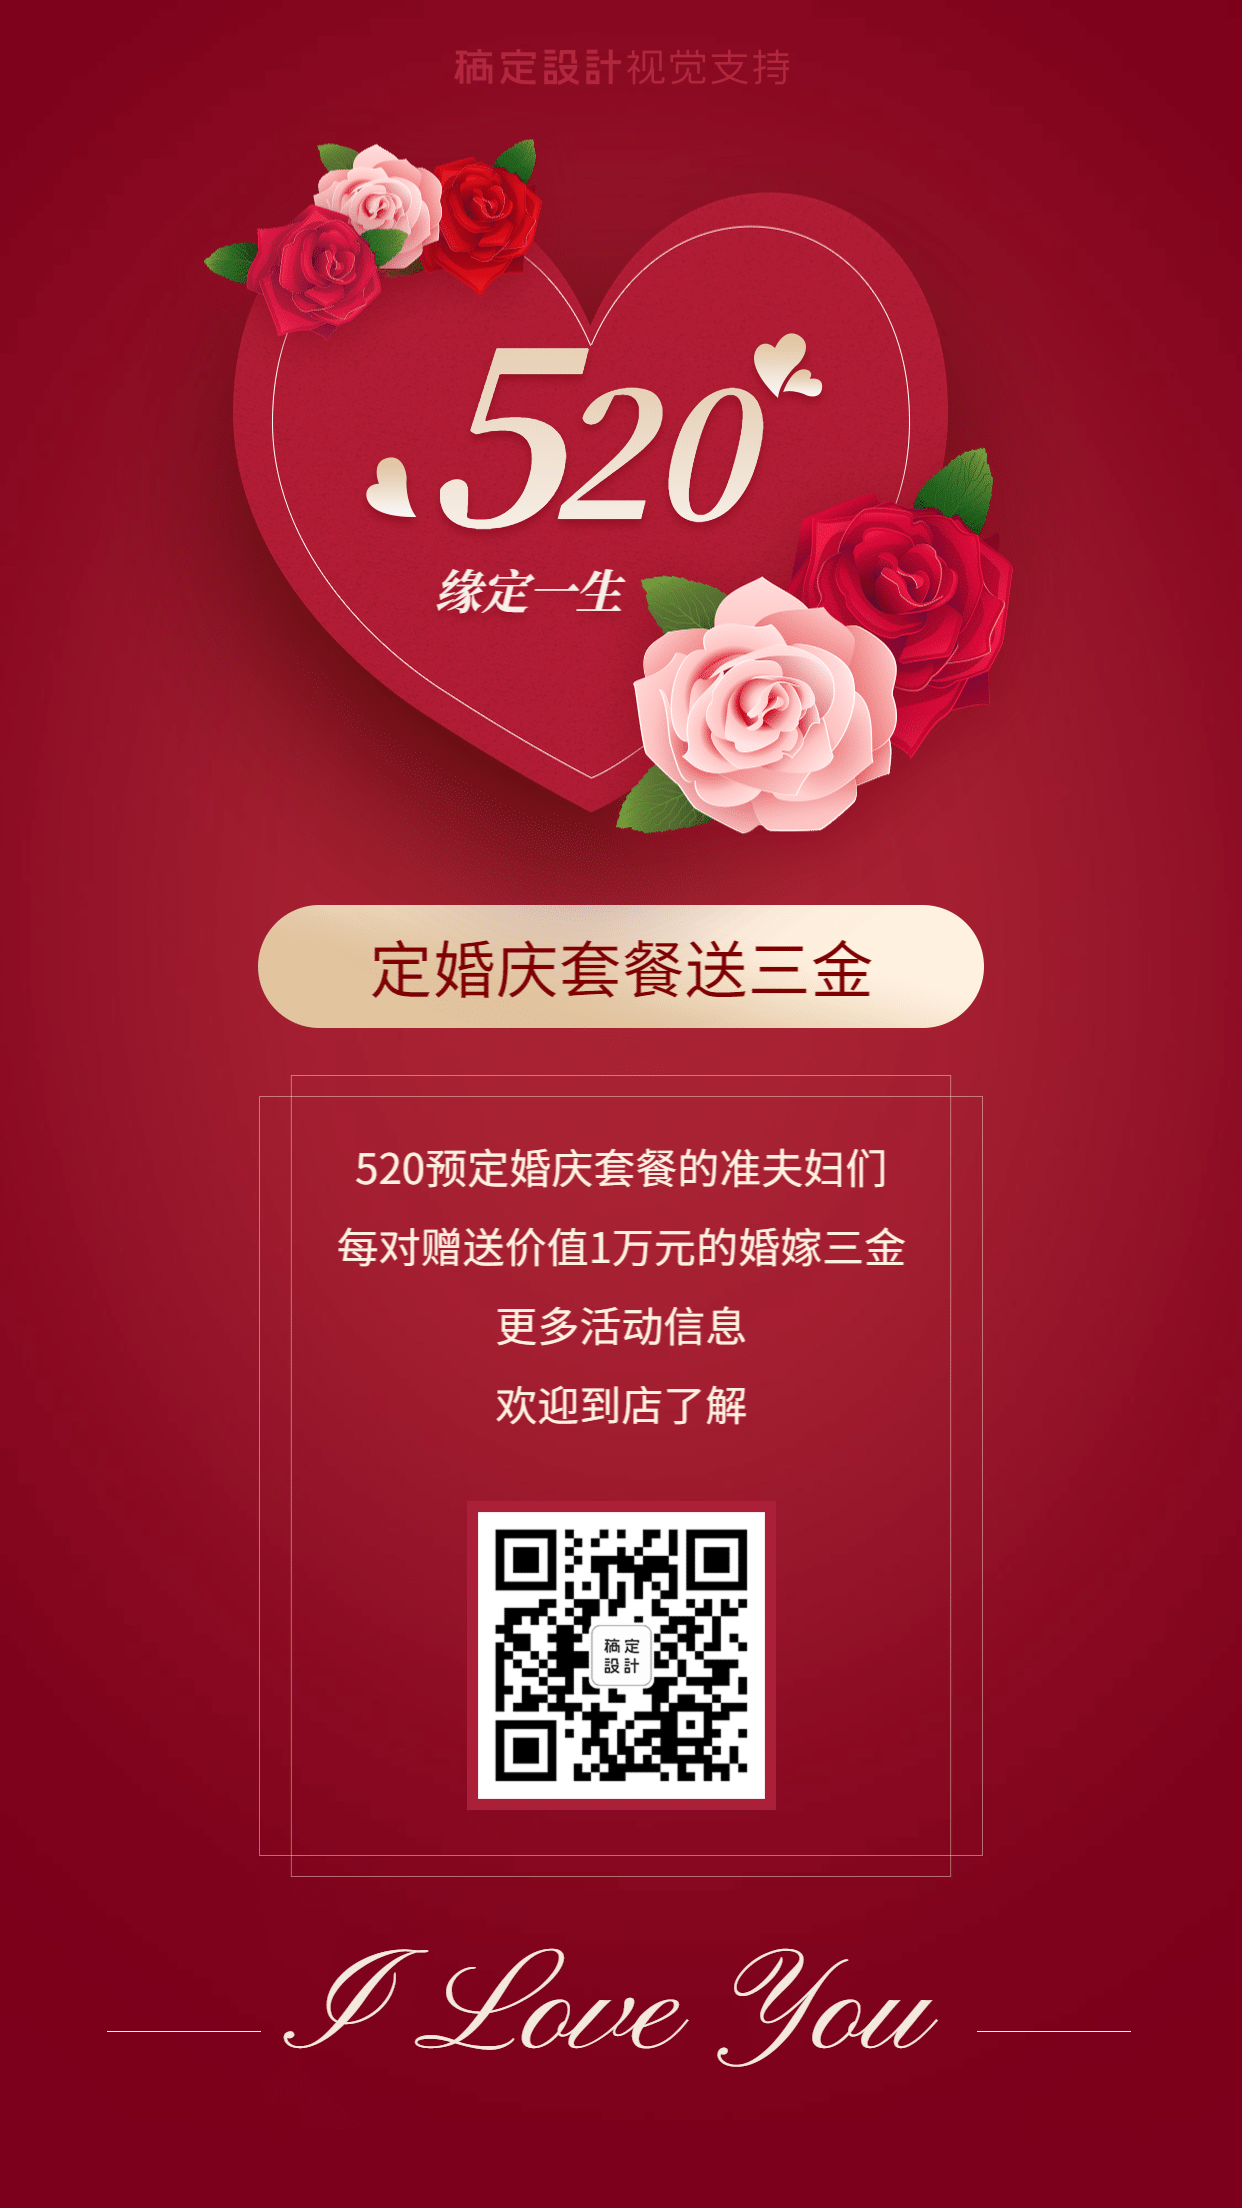 520情人节婚庆预定送礼活动营销海报预览效果